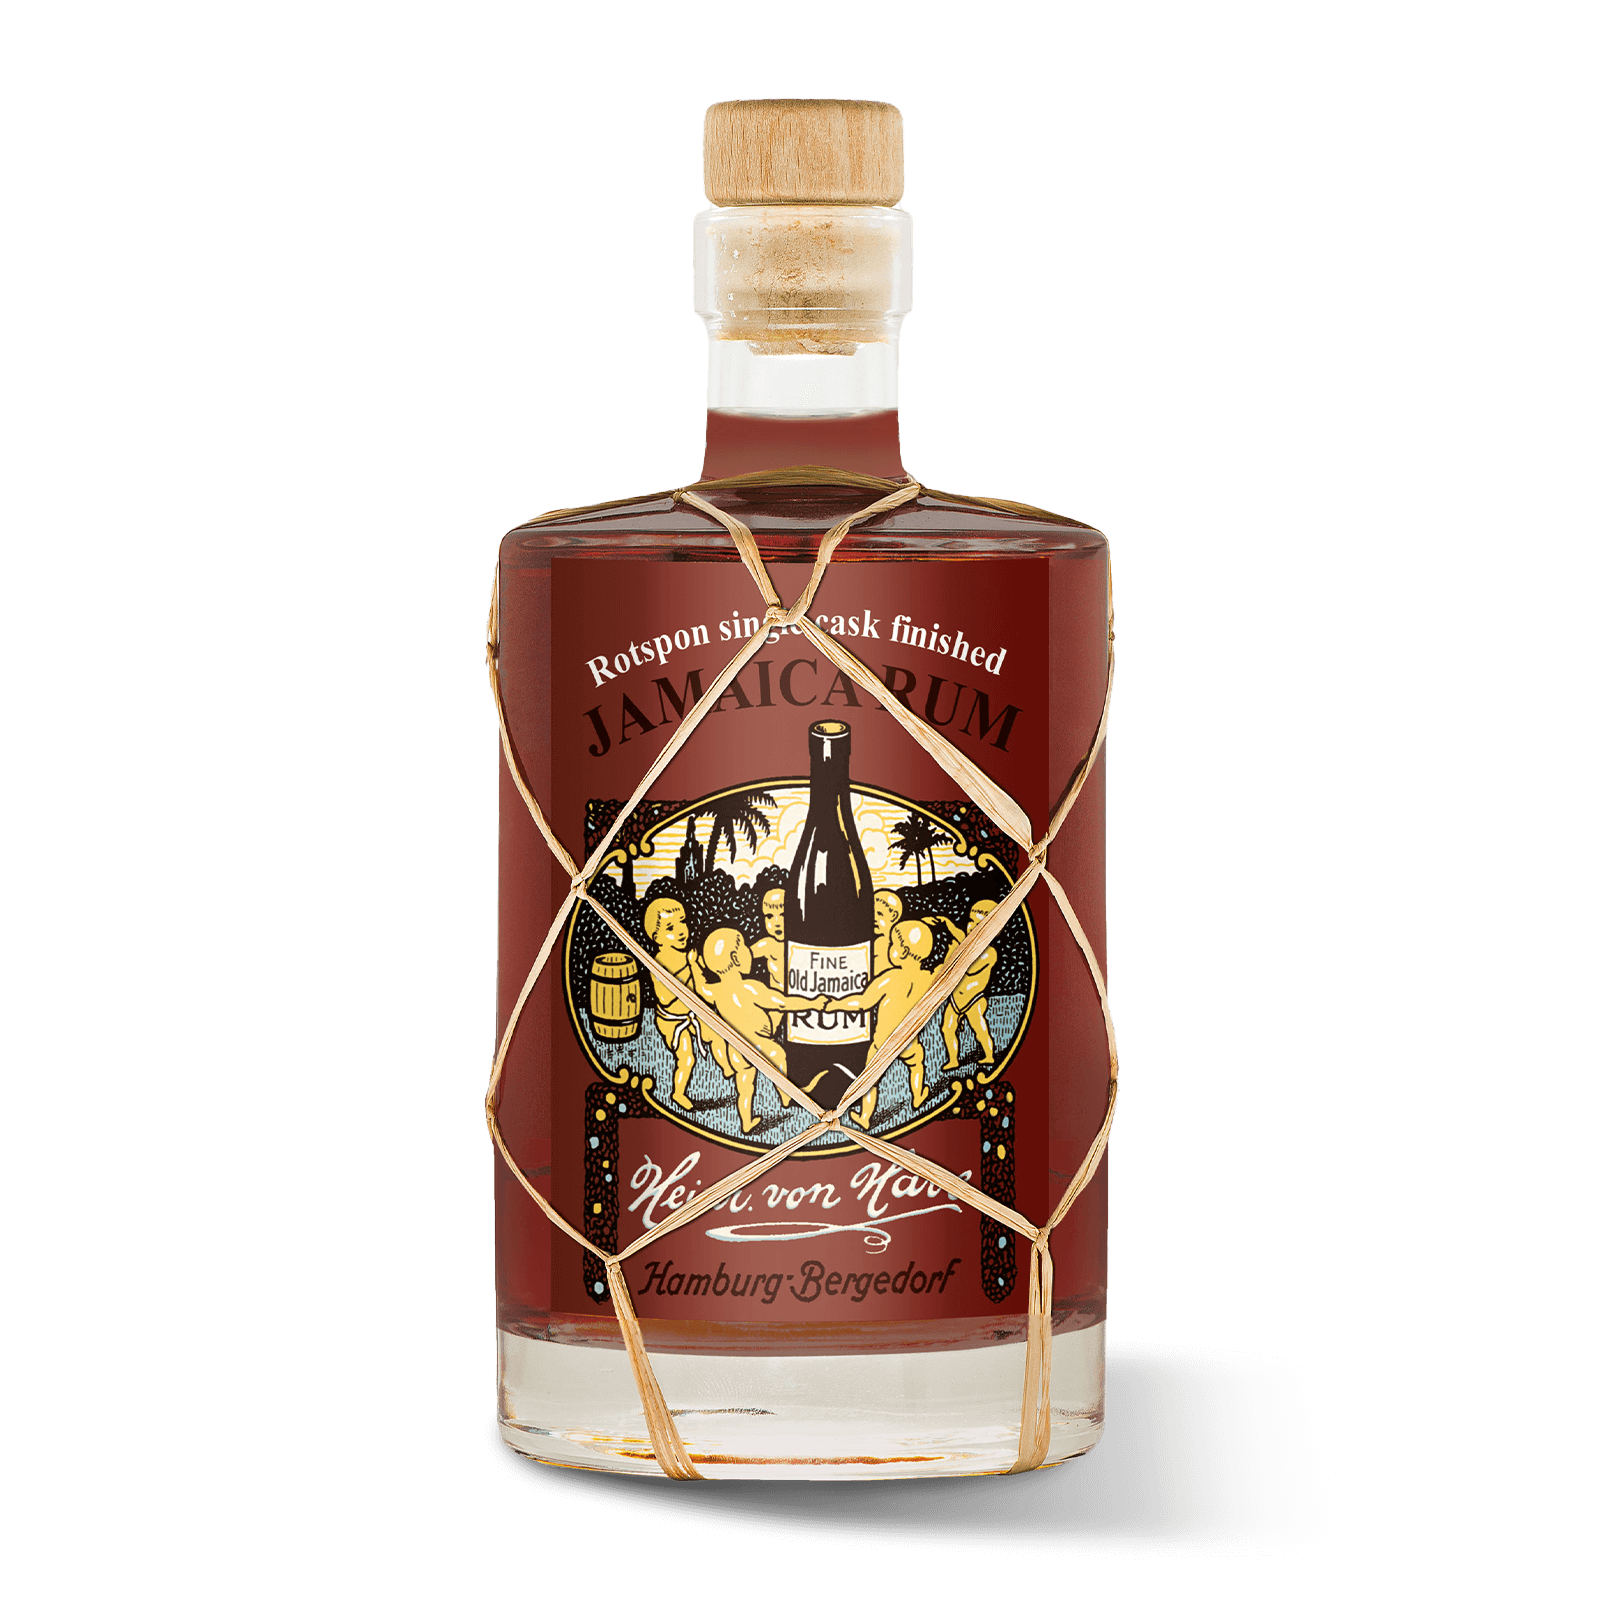 Produktabbildung Heinr. von Have Jamaica Rum Rotspon Single Cask Finished